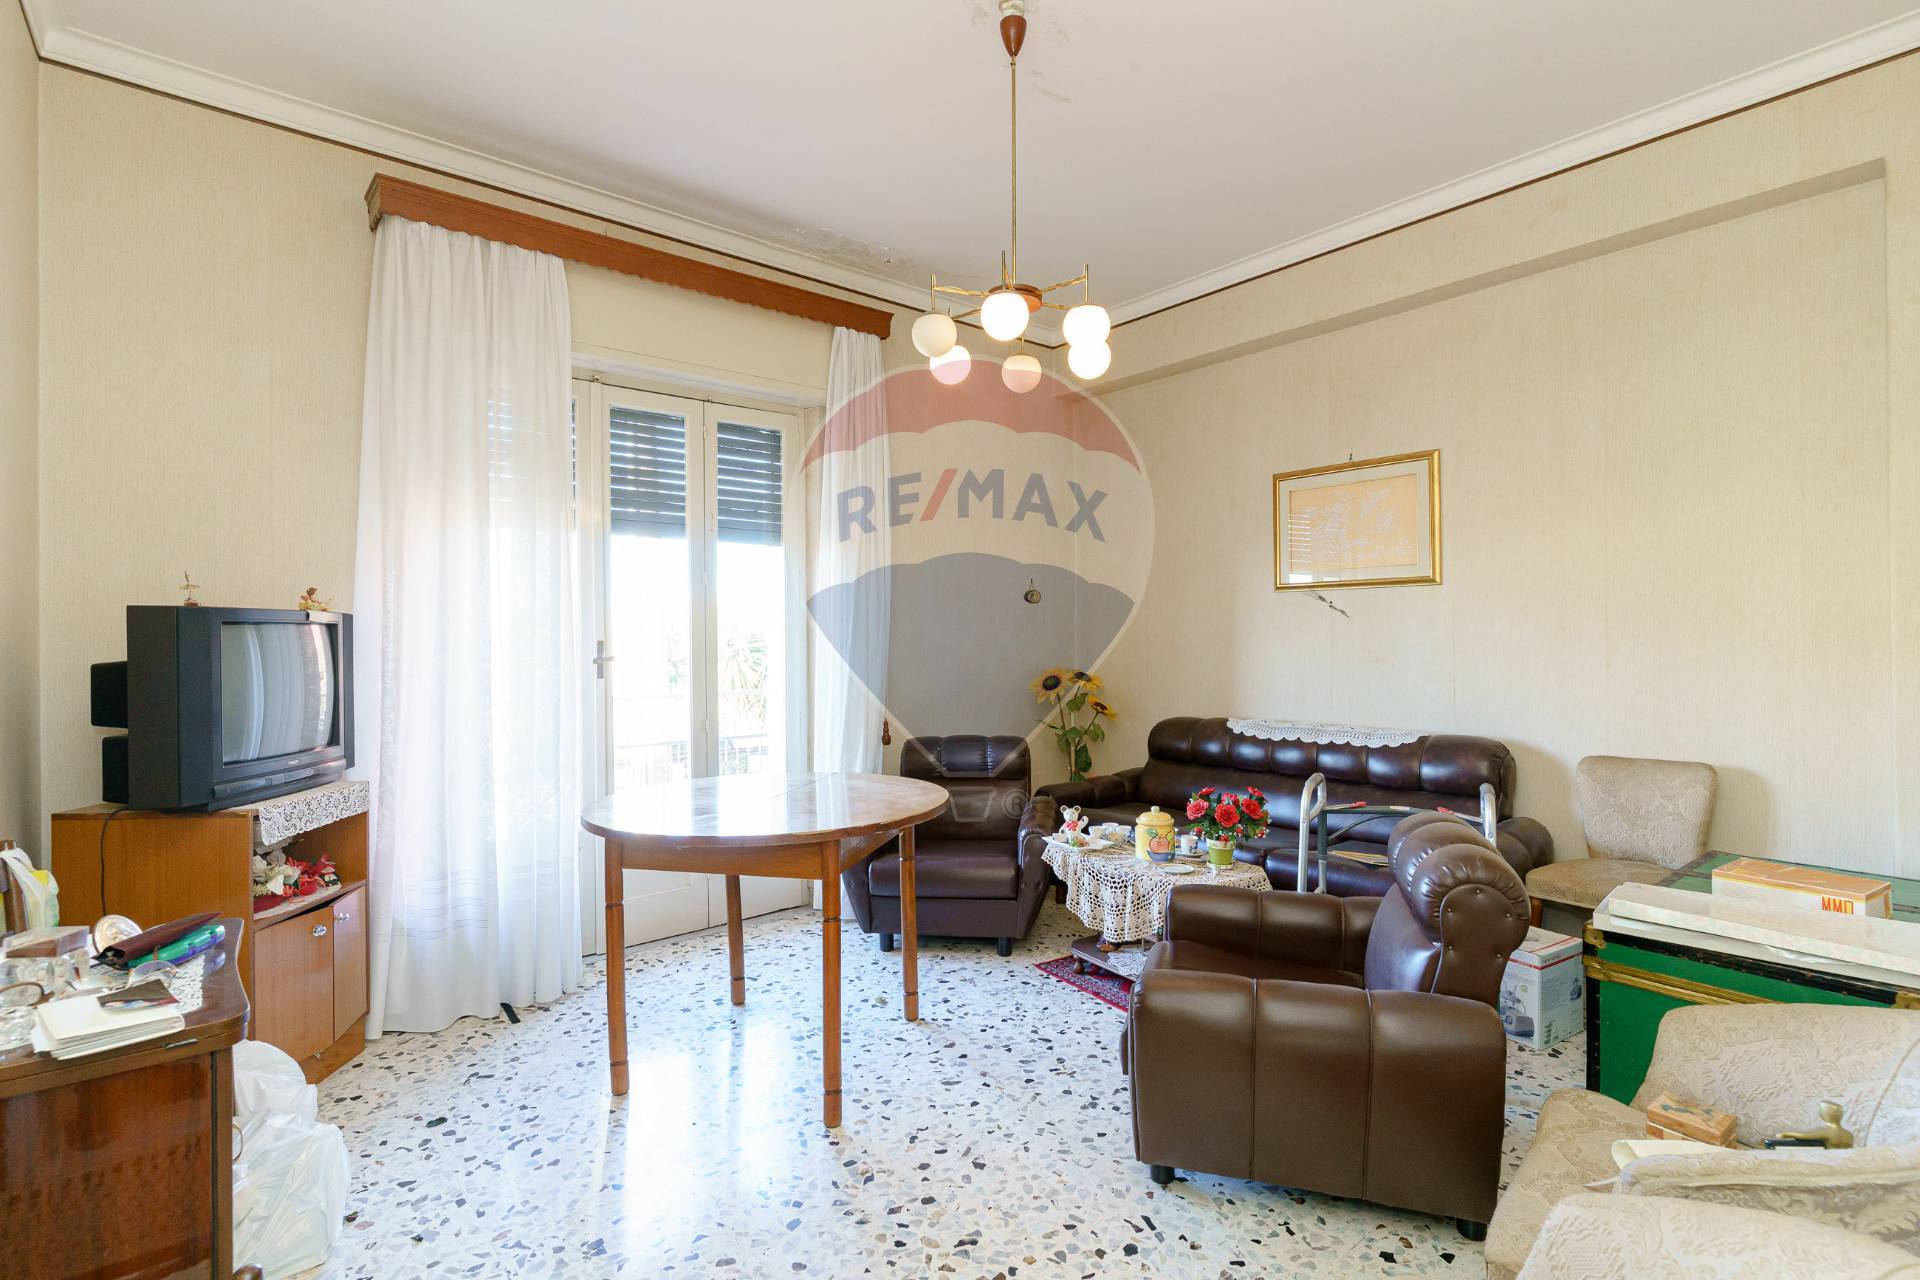 Appartamento in affitto a Belpasso, 3 locali, prezzo € 450 | CambioCasa.it